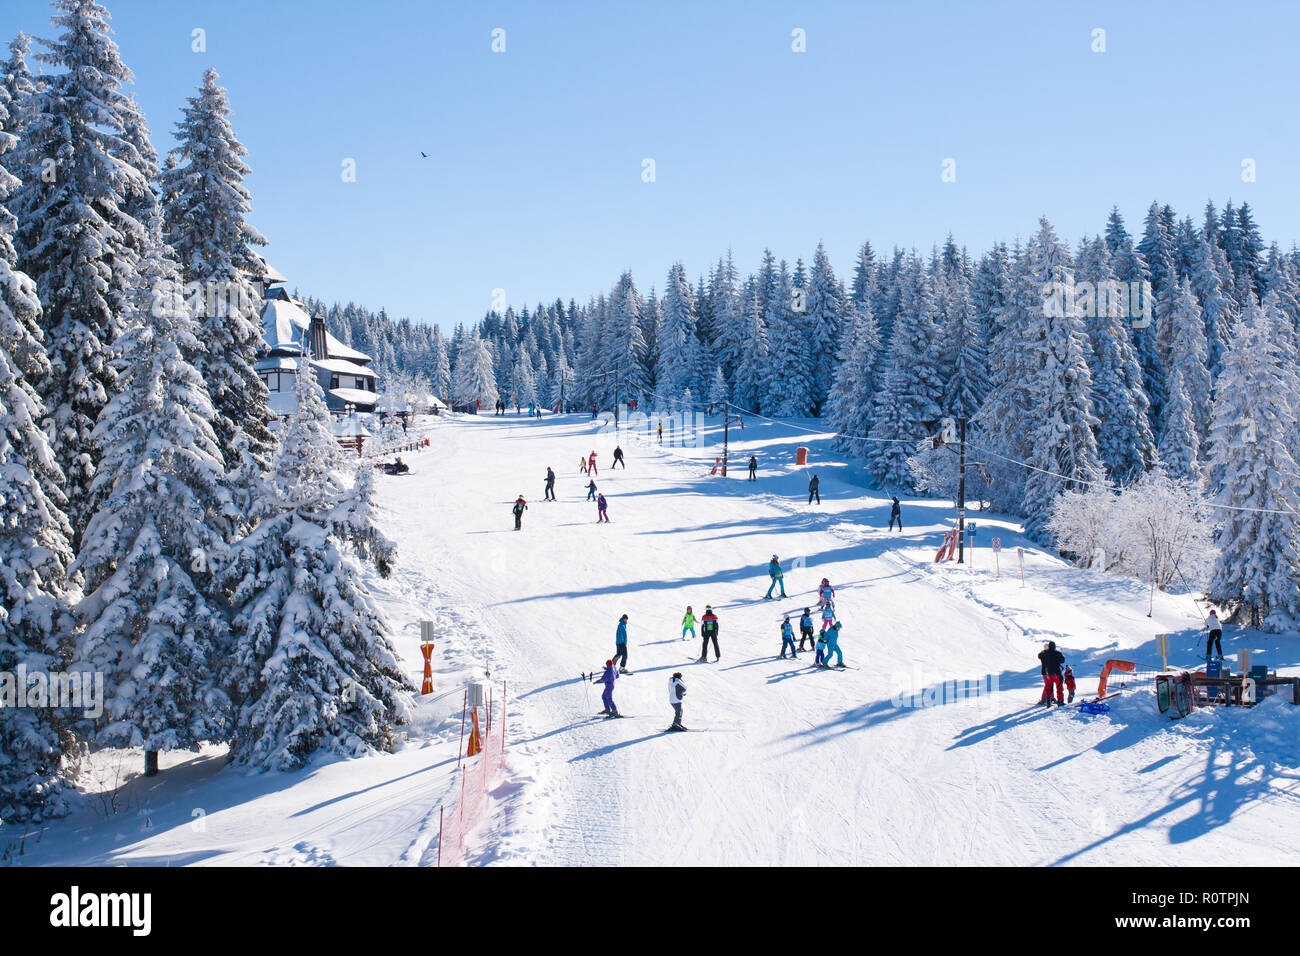 Panorama von Ski Resort, Skigebiet, Skifahren, Häuser mit Schnee bedeckt Stockfoto